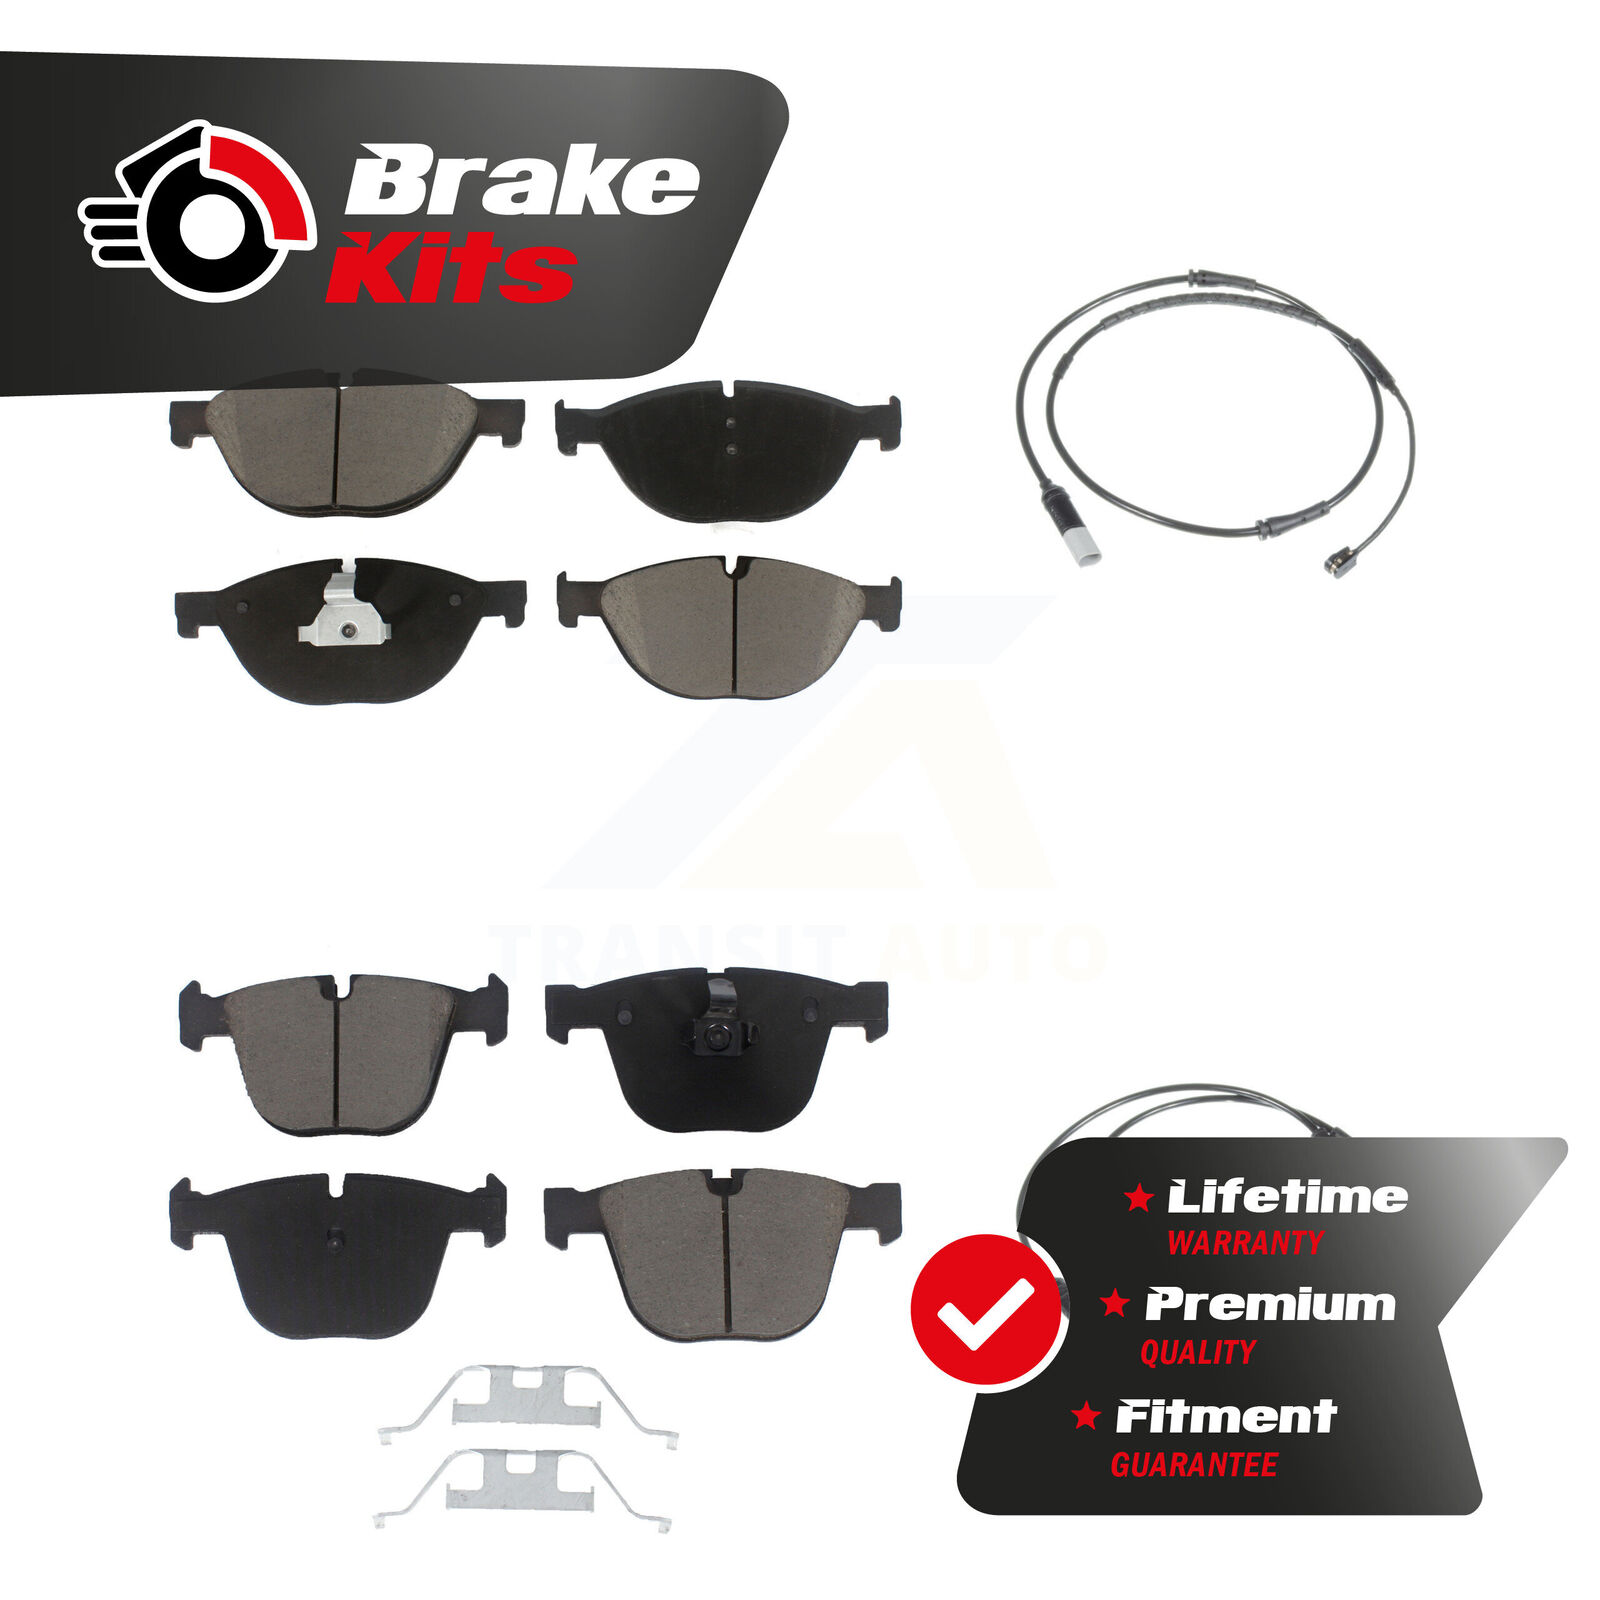 Front Rear Ceramic Brake Pad & Wear Sensor Kit For 2012-2012 BMW 750i GAS engine